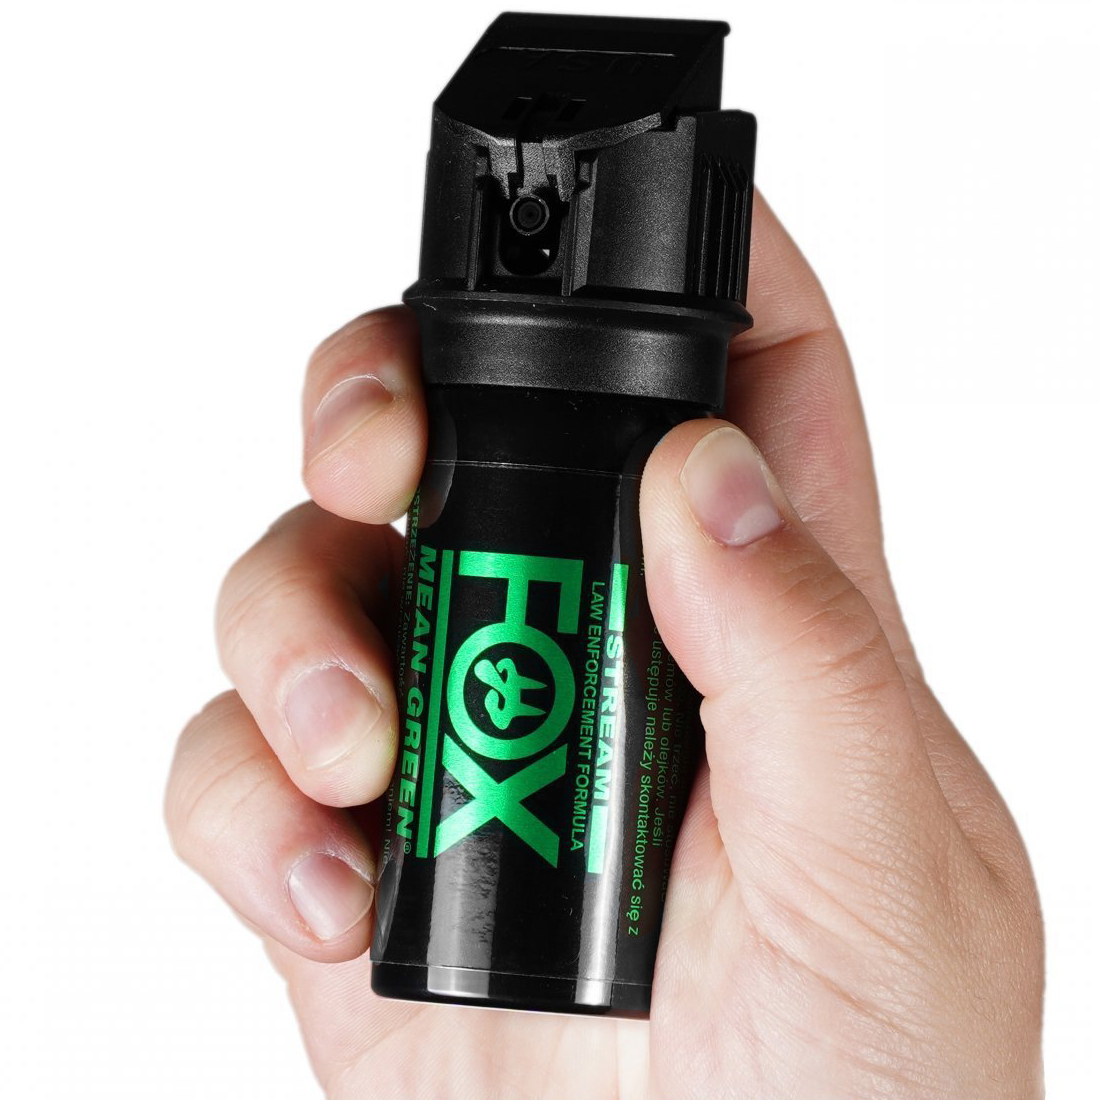 Fox Labs Mean Green 43 ml cone 1.5 pepper spray - shop